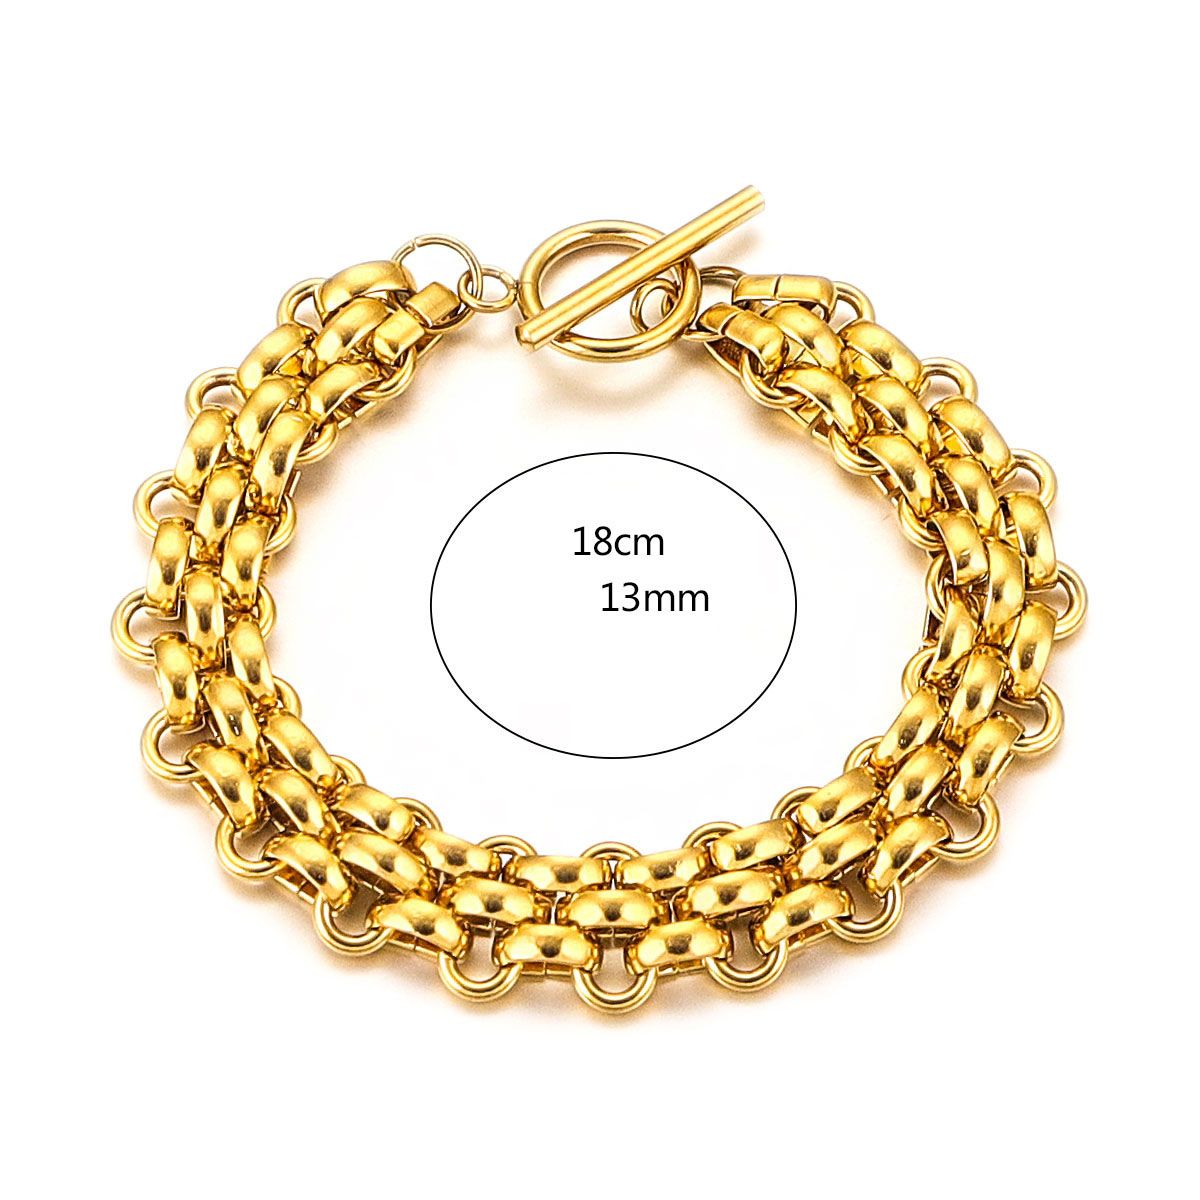 5:Glossy Bracelet - Gold